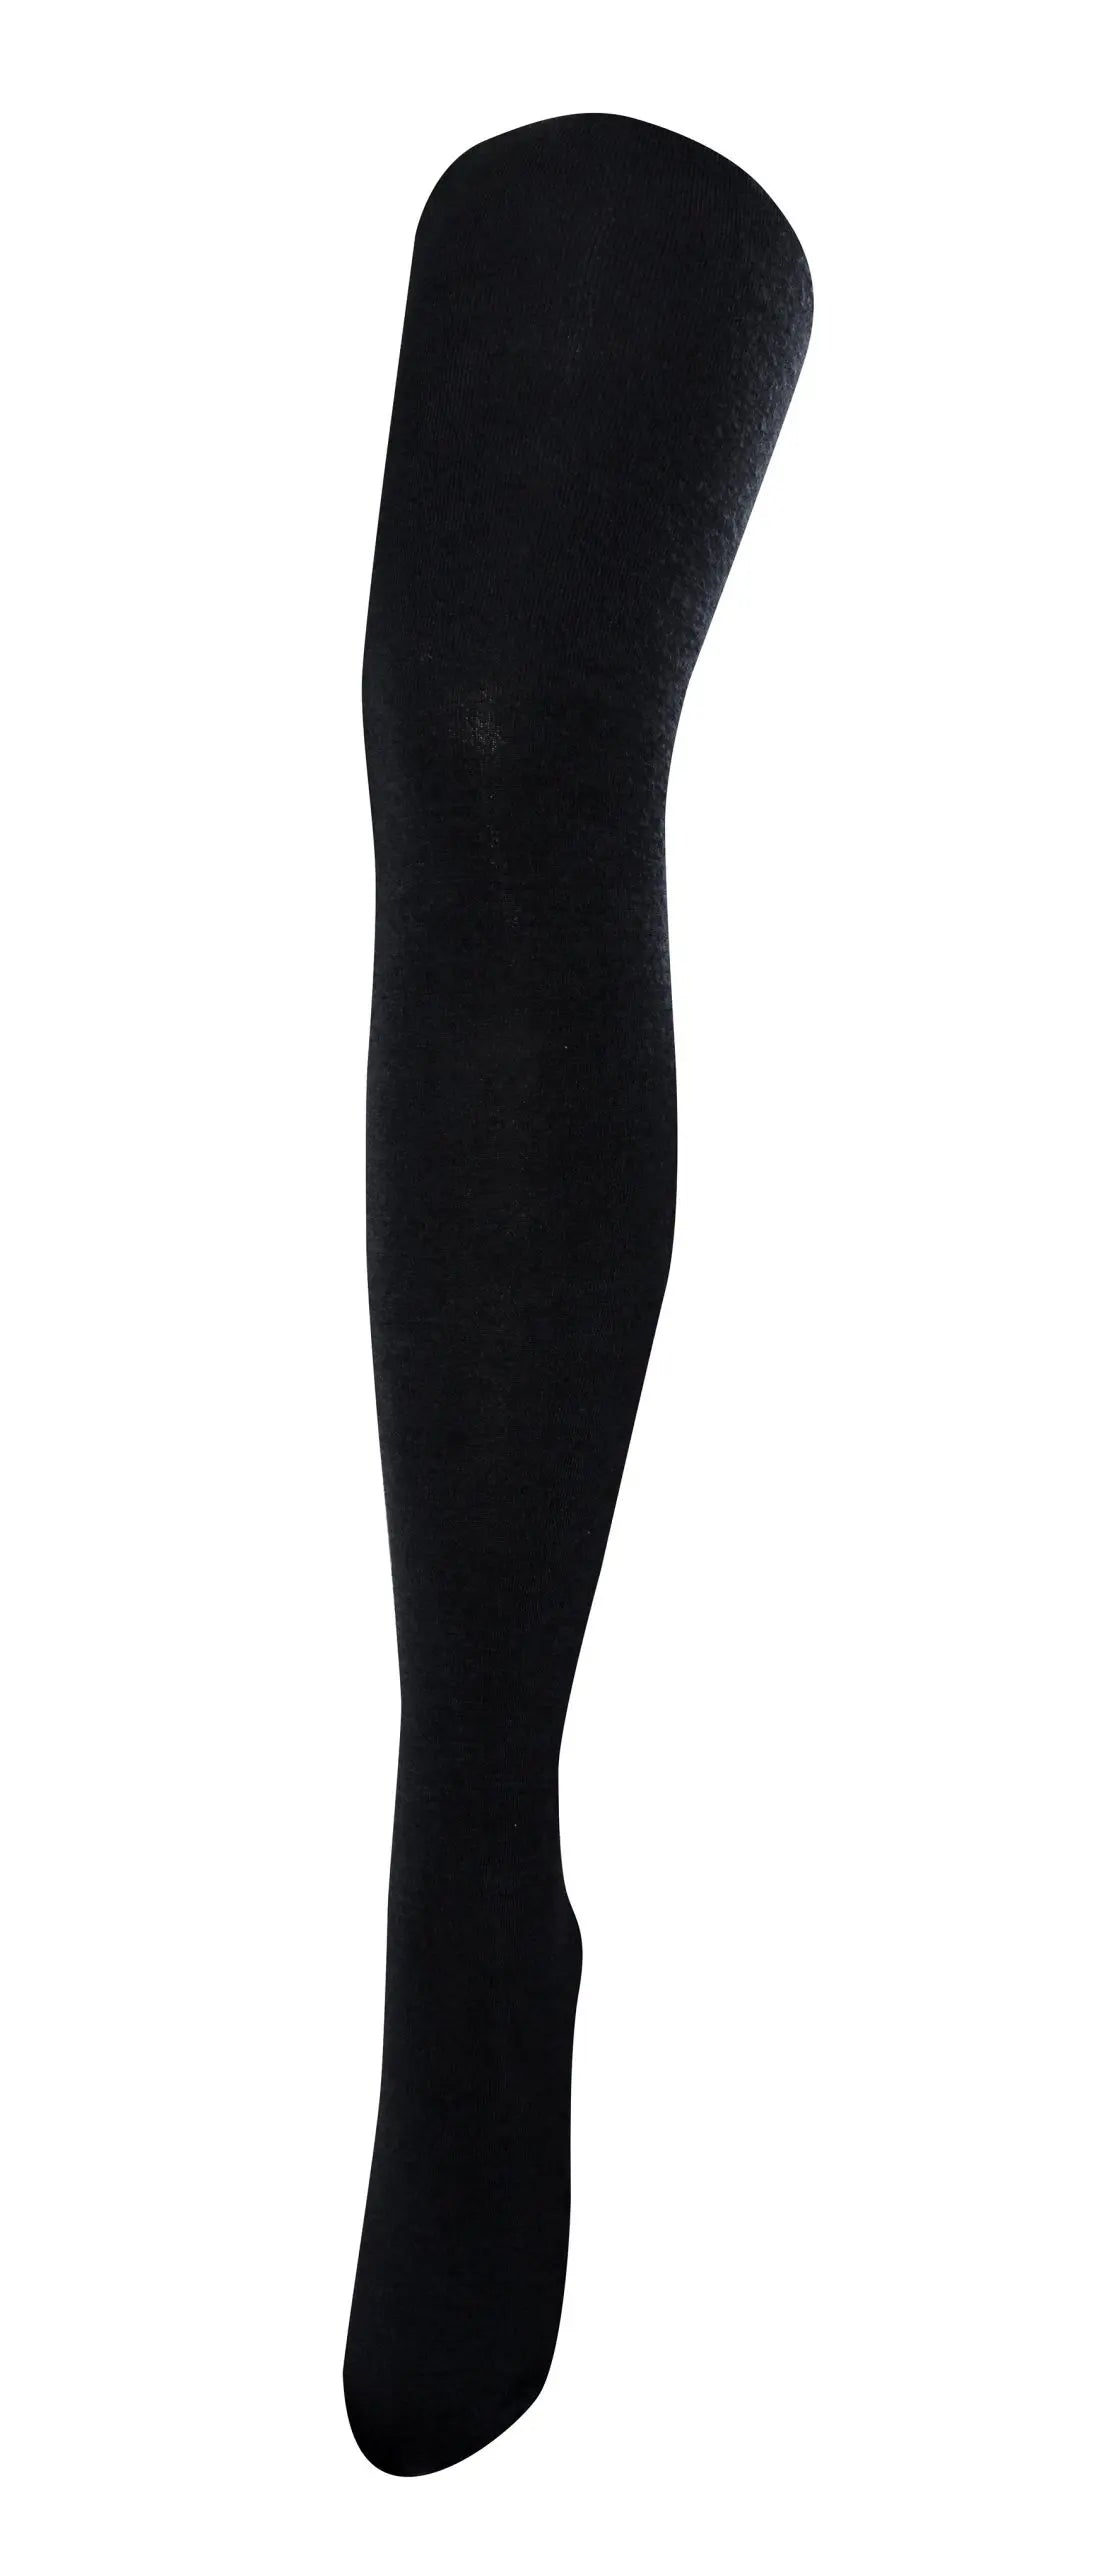 Tightology - Luxe Merino Wool Tights - Black